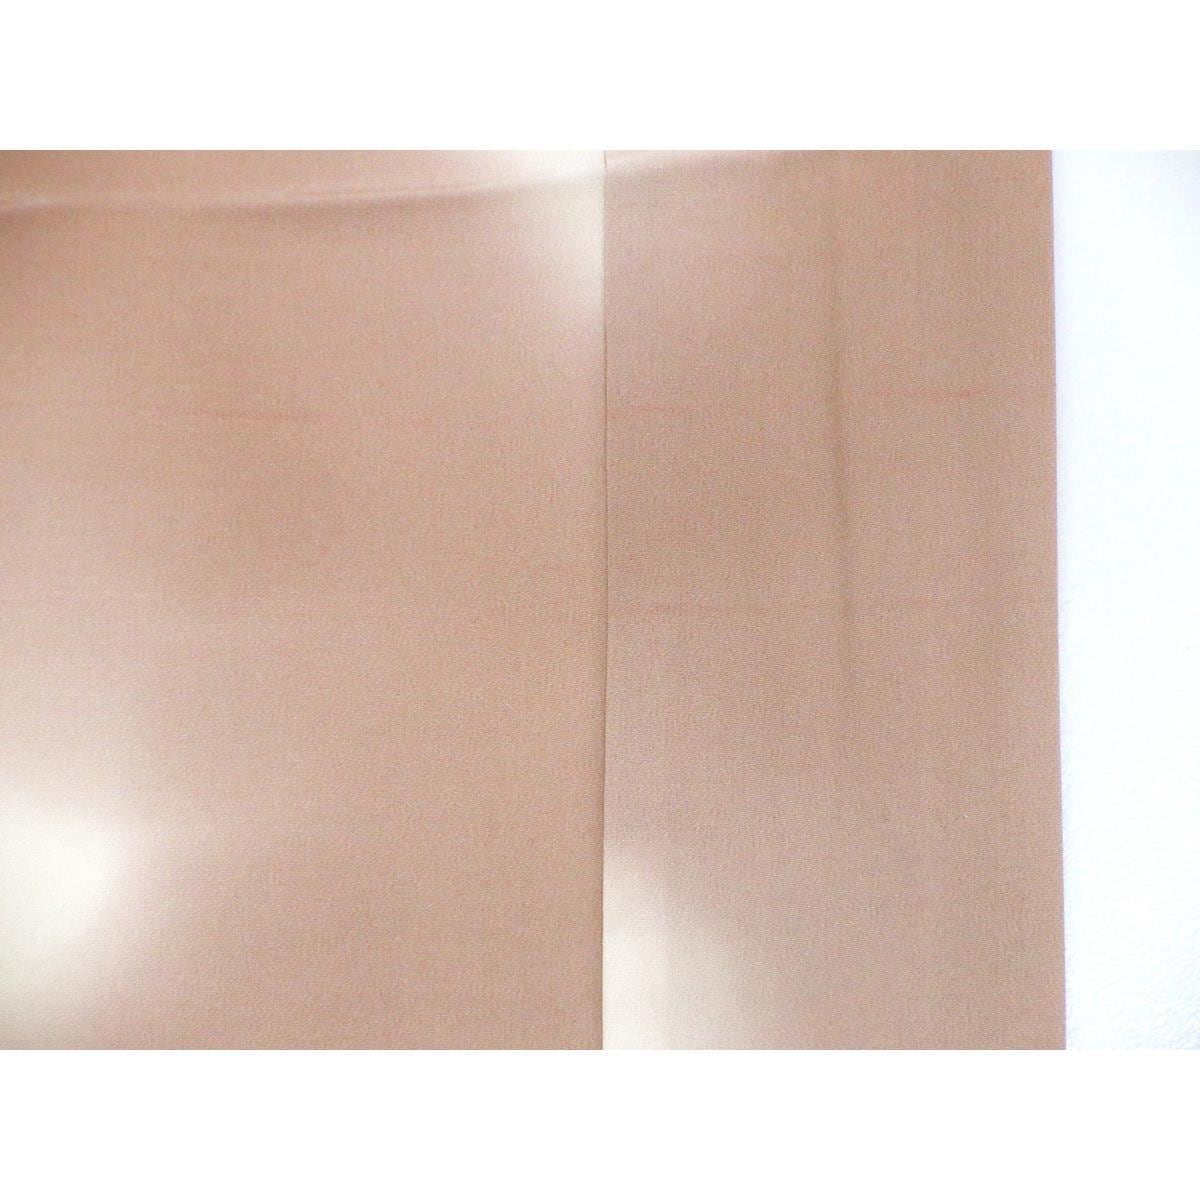 Nagusa undergarment, shading dyeing, sleeve length S dimension